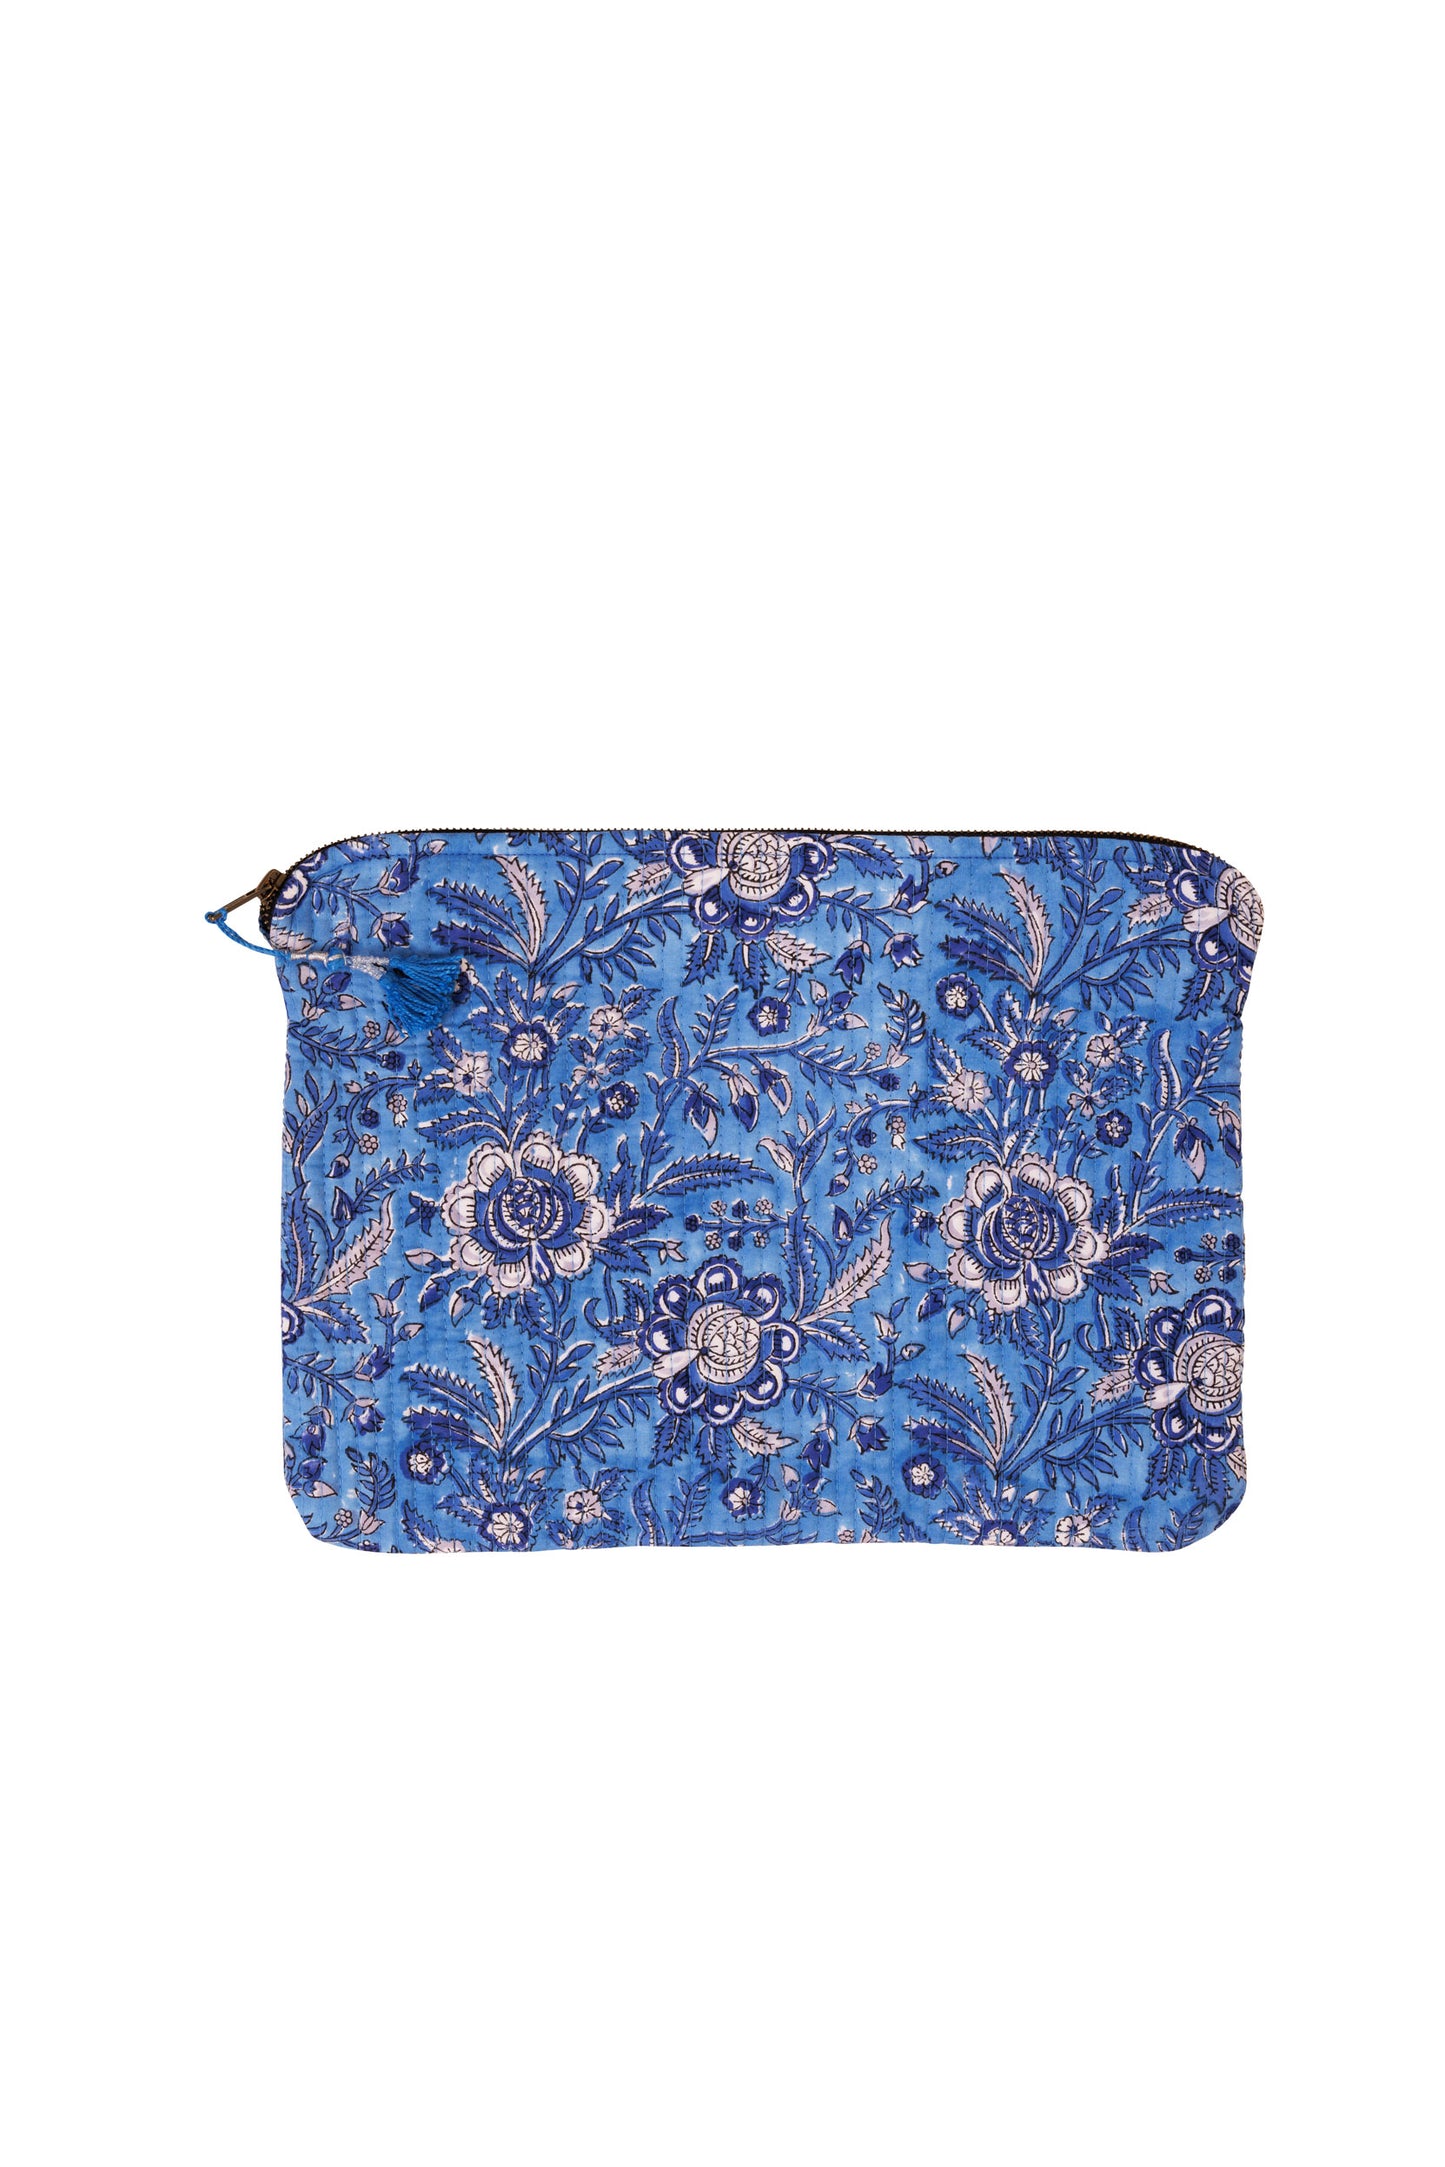 Laptop/iPad Case - Blue Floral